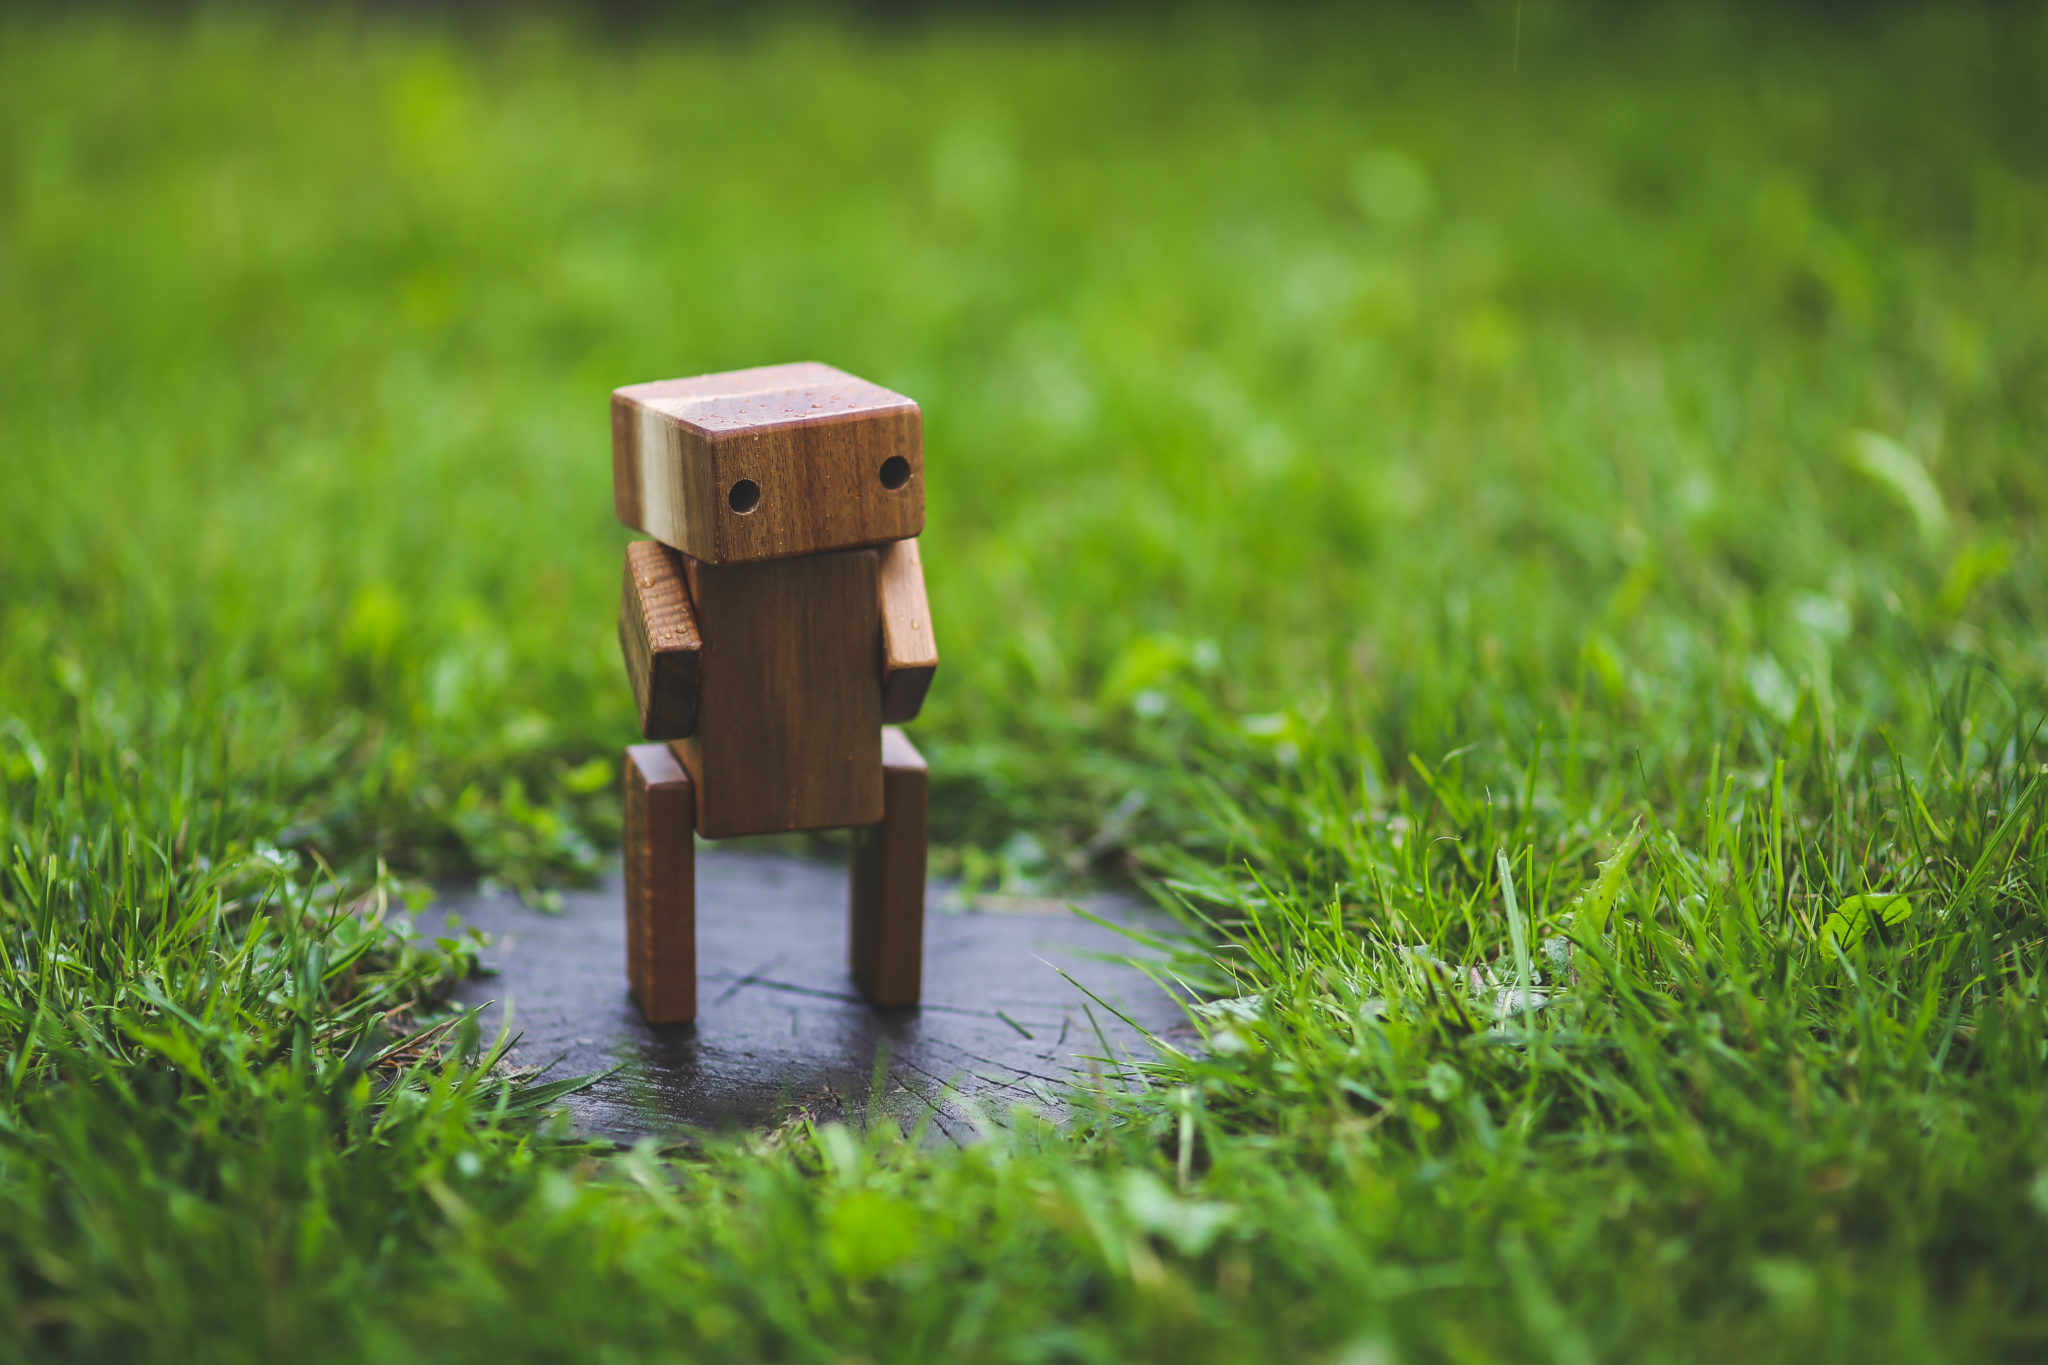 wooden figure outside in grass lawn.